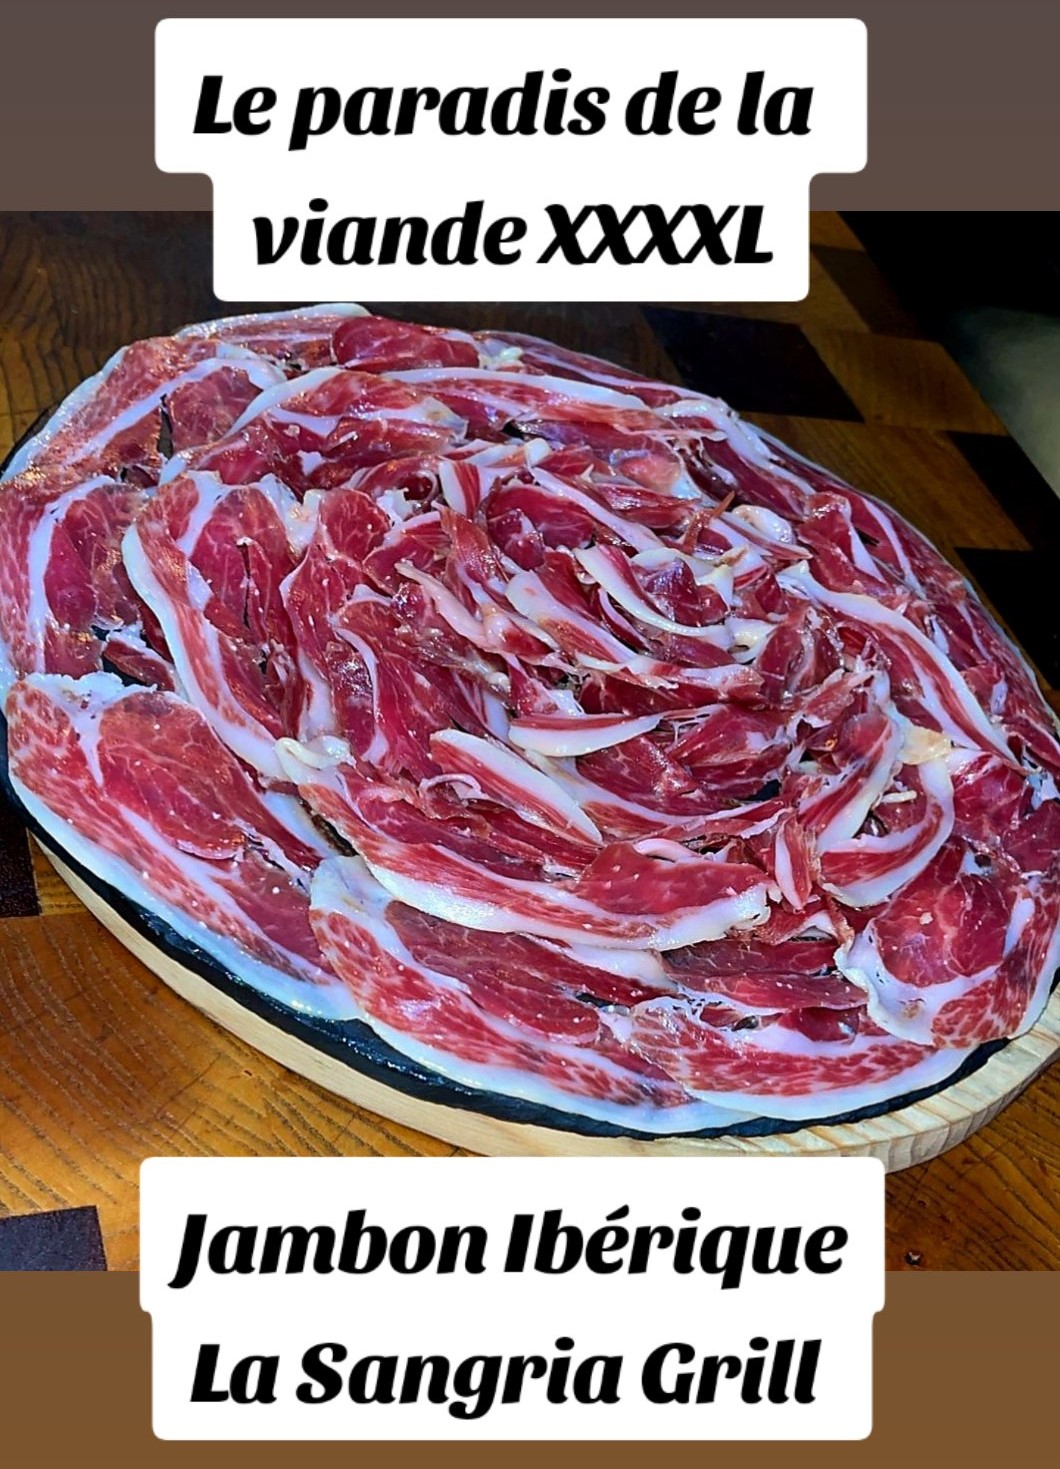 La Sangria Grill, restaurant de cuisine de proximité avec le meilleur jambon Ibérique de l'Andorre. Plus connu comme "Jambon Pata Negra" ce jambon ibérique est considéré comme le meilleur jambon au monde.